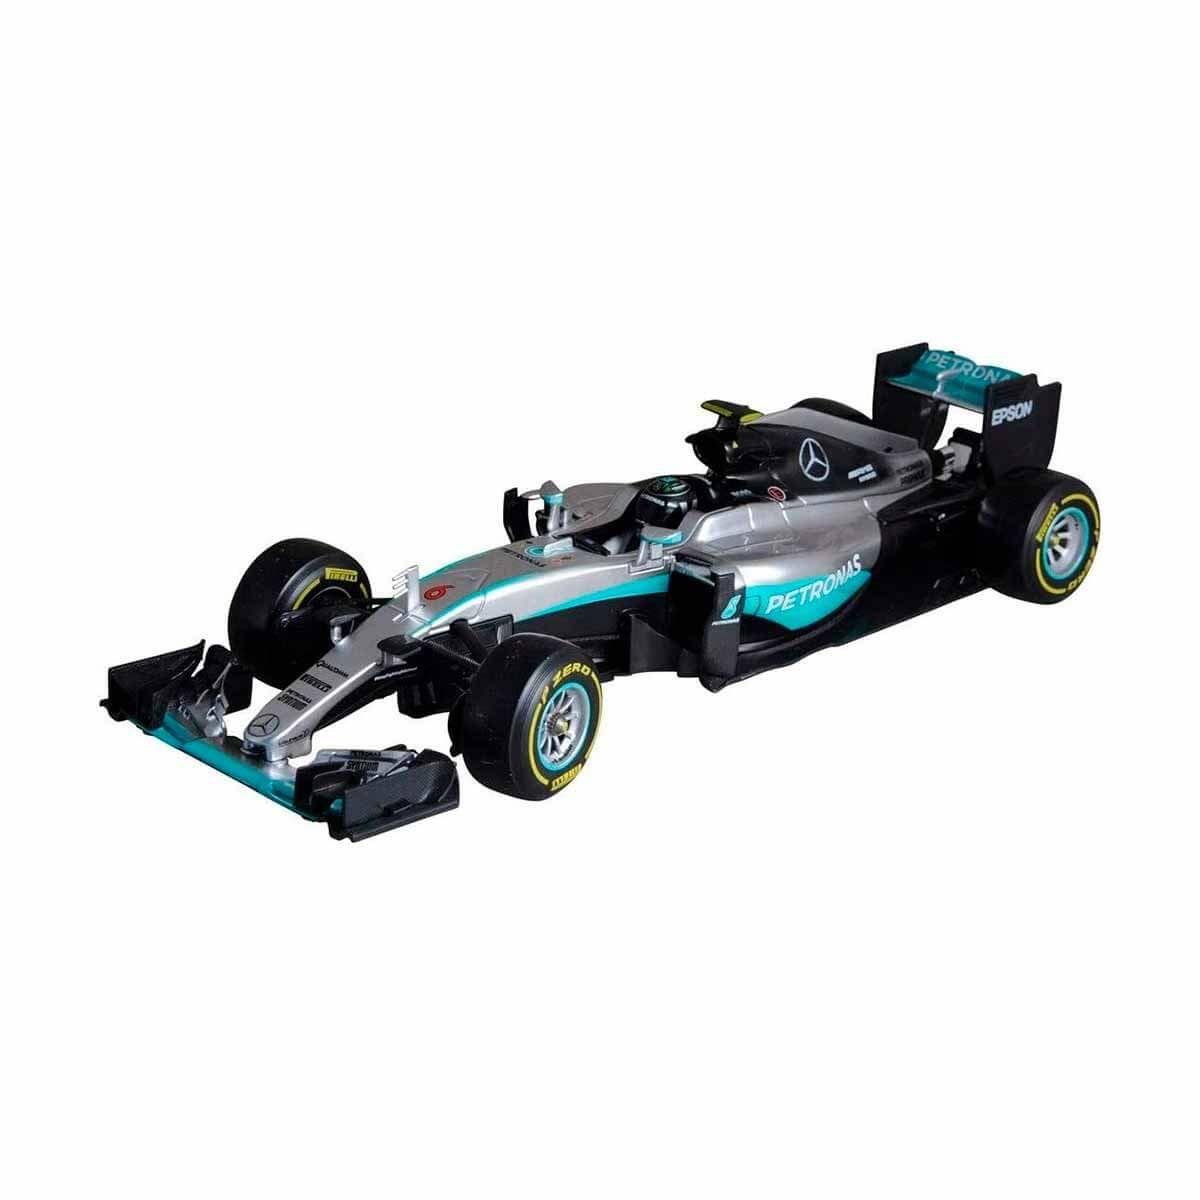 Гибрид 44. Модель 1:18 Mercedes-AMG Petronas f1 Team w07 Hybrid №44 (Lewis Hamilton). AMG f1 w07 Hybrid.